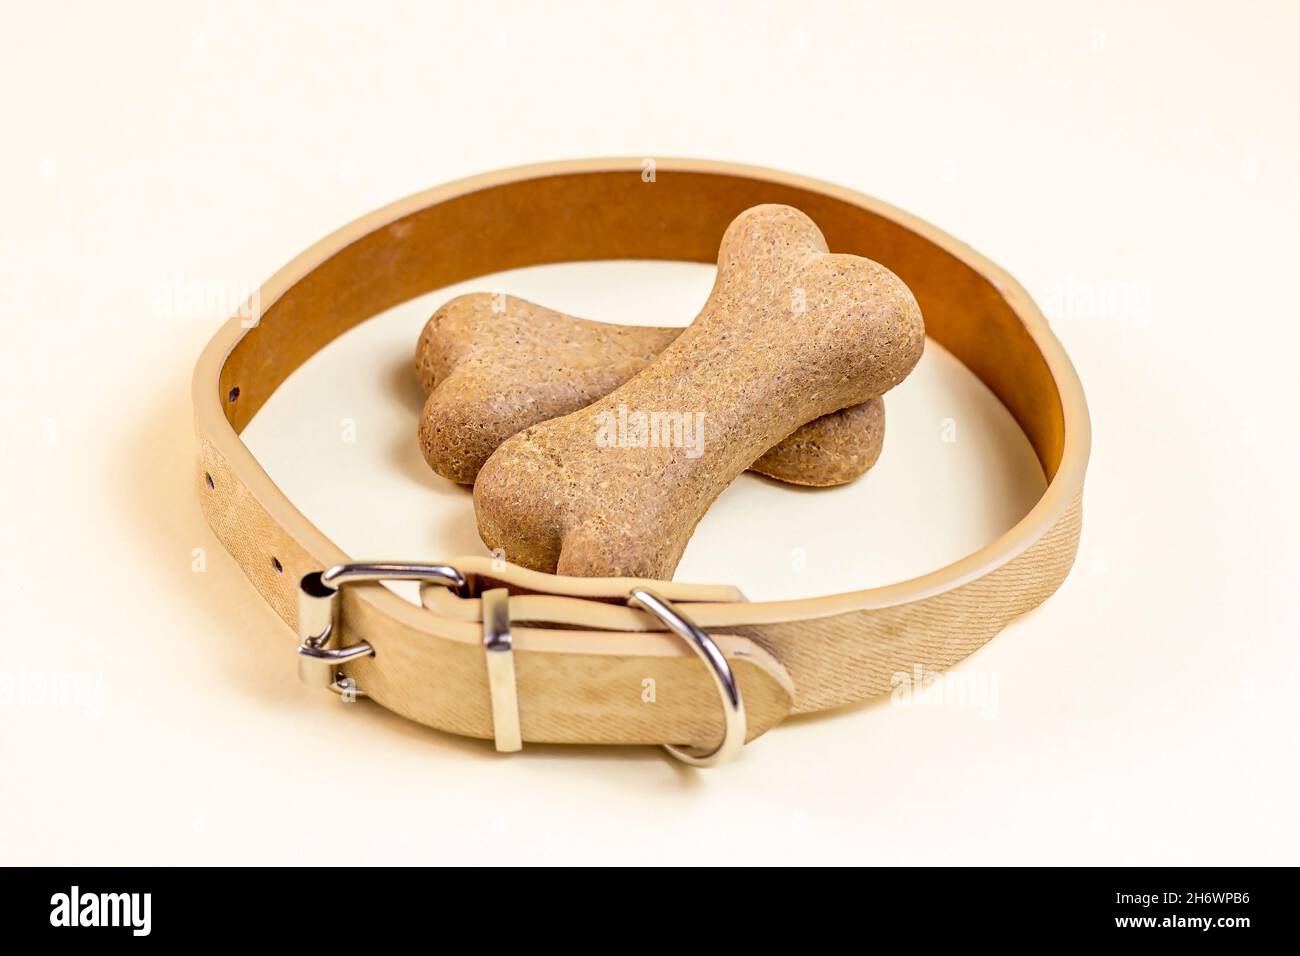 Braune Keksknochen für Hunde beiges Halsband auf hellem Hintergrund. Hunde- und Welpenfutter, gesunde Leckereien. Stockfoto